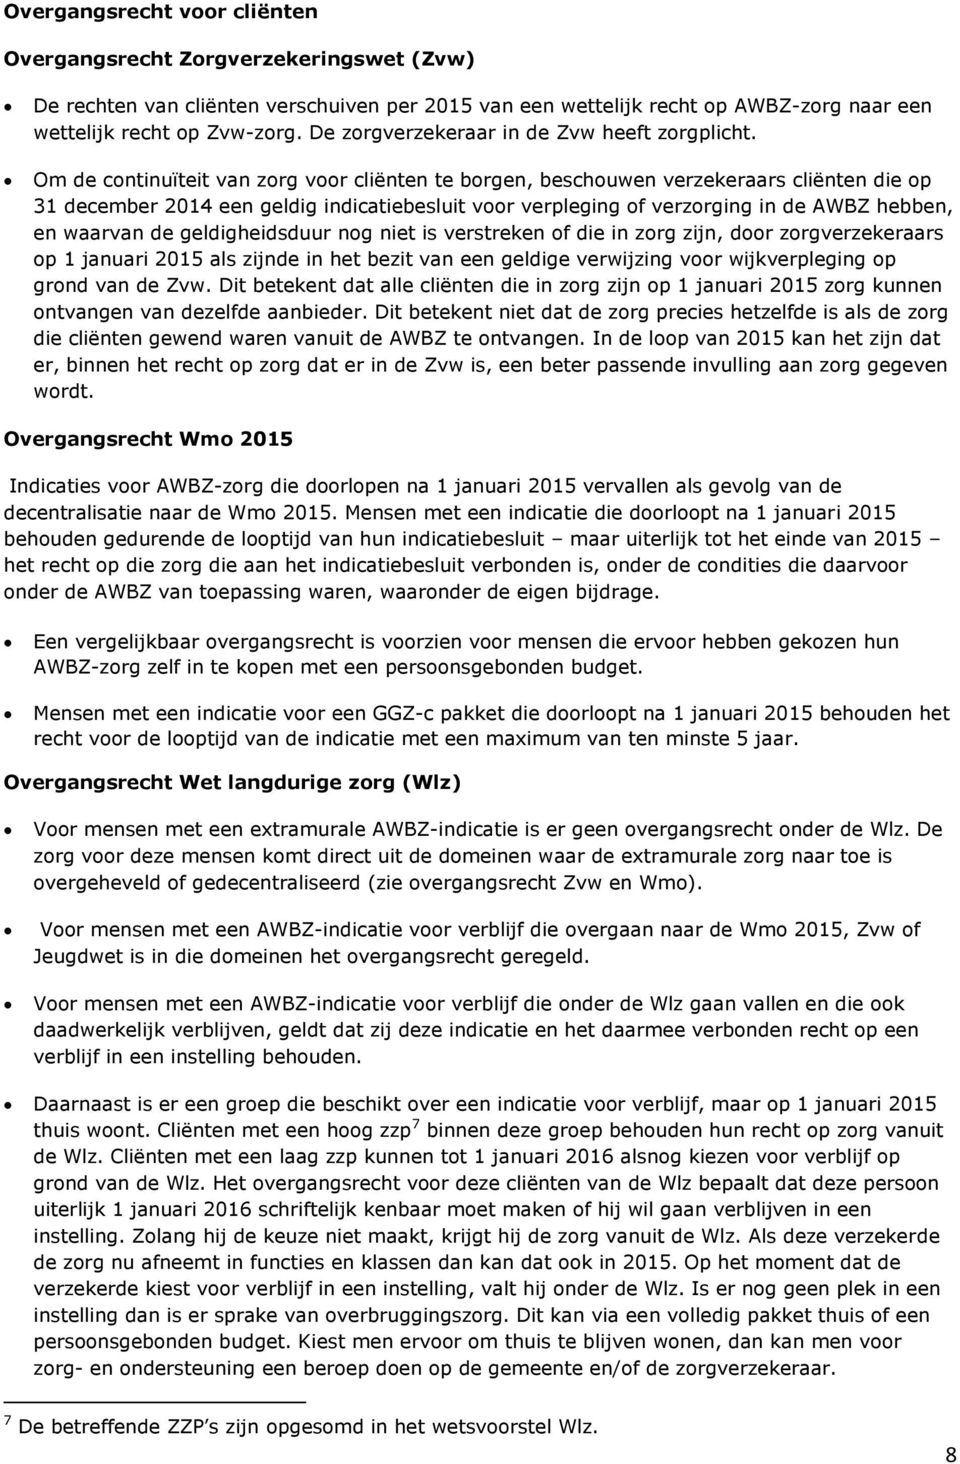 Om de continuïteit van zorg voor cliënten te borgen, beschouwen verzekeraars cliënten die op 31 december 2014 een geldig indicatiebesluit voor verpleging of verzorging in de AWBZ hebben, en waarvan